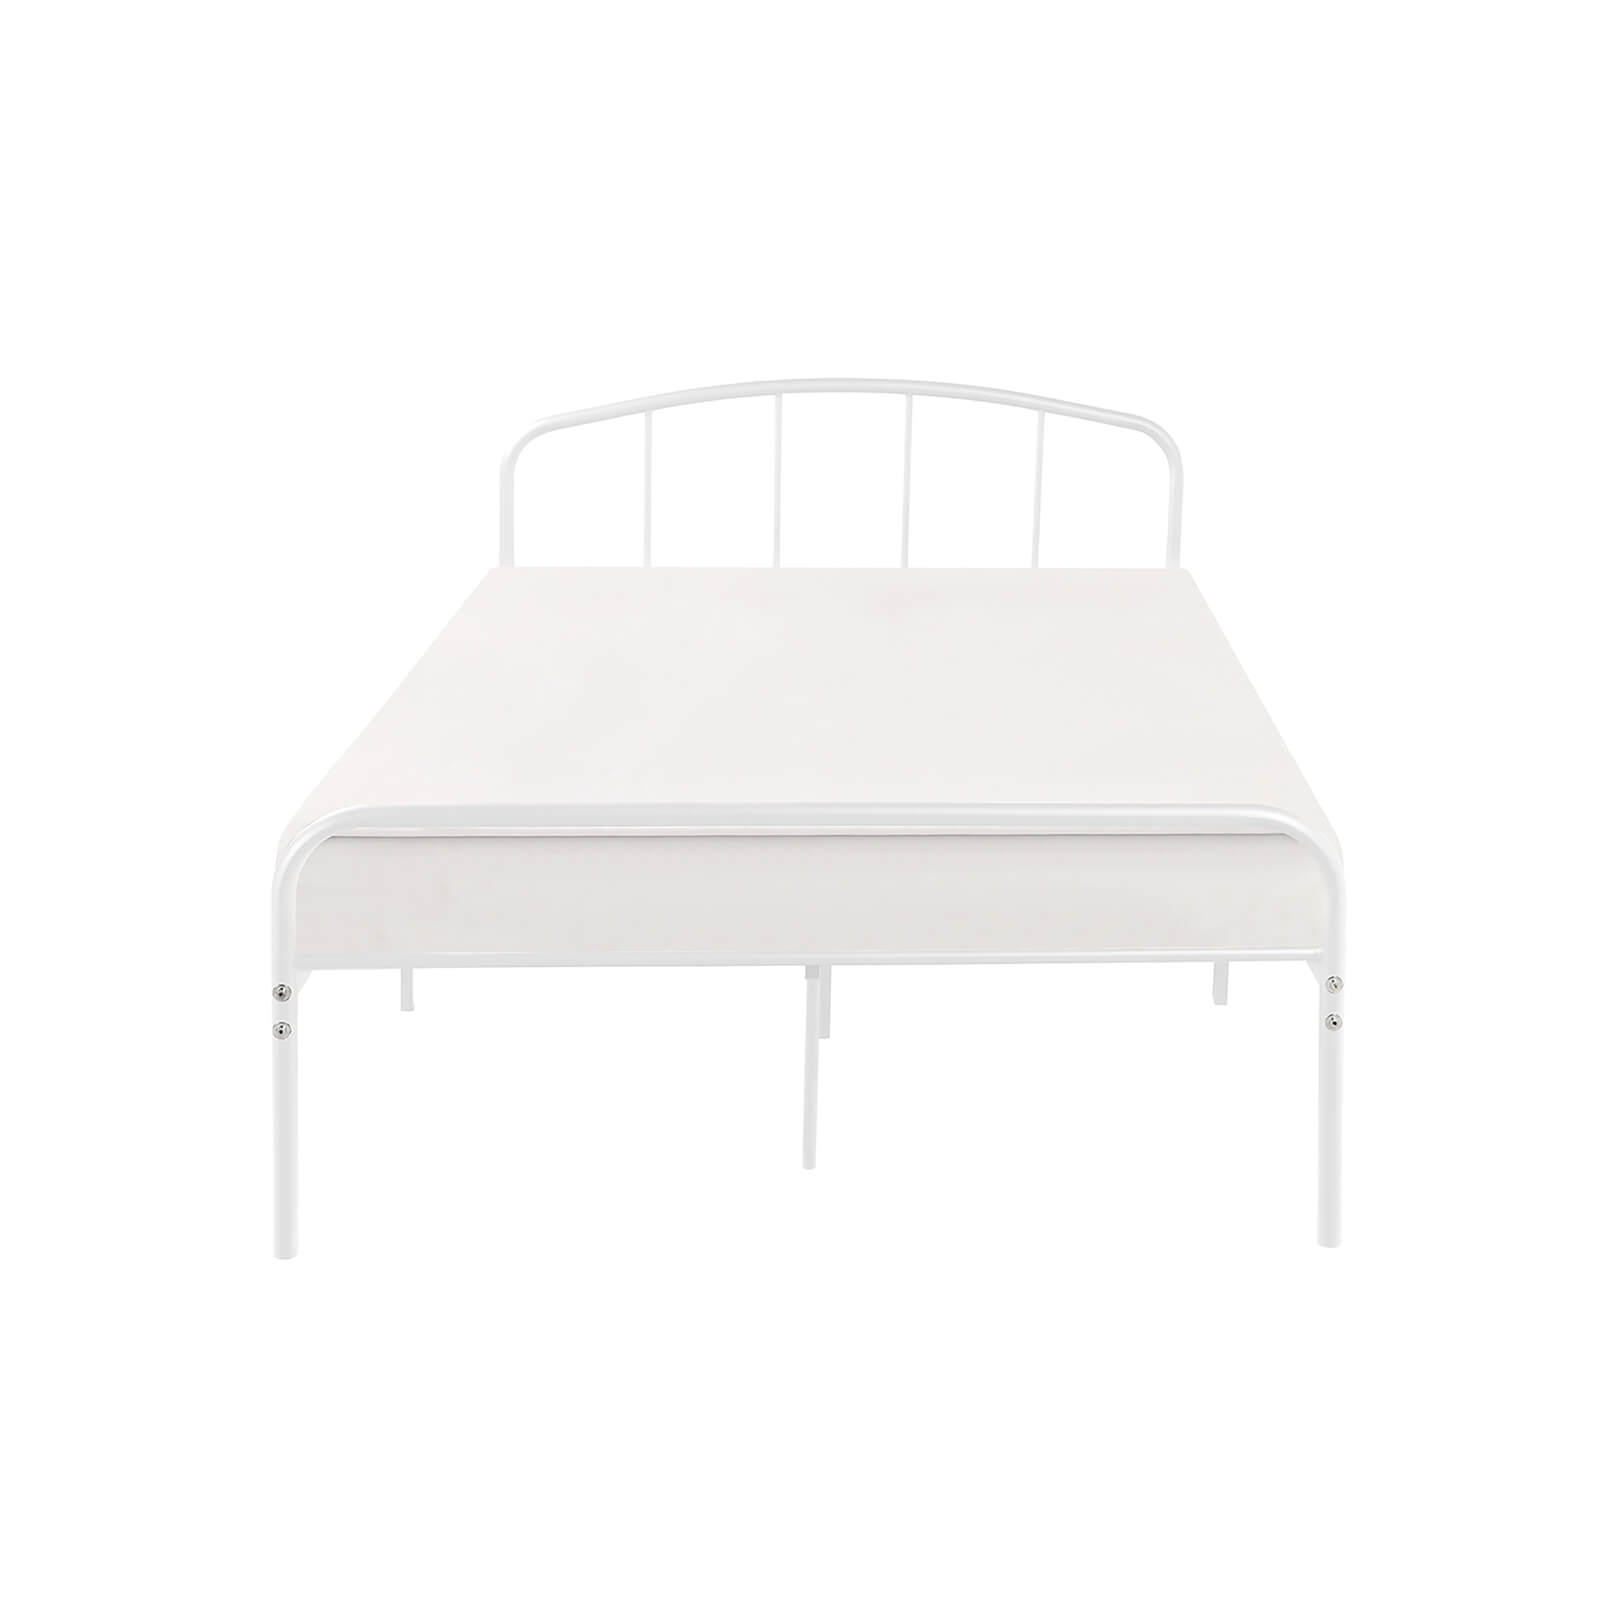 Milton Small Double Bed Frame - White